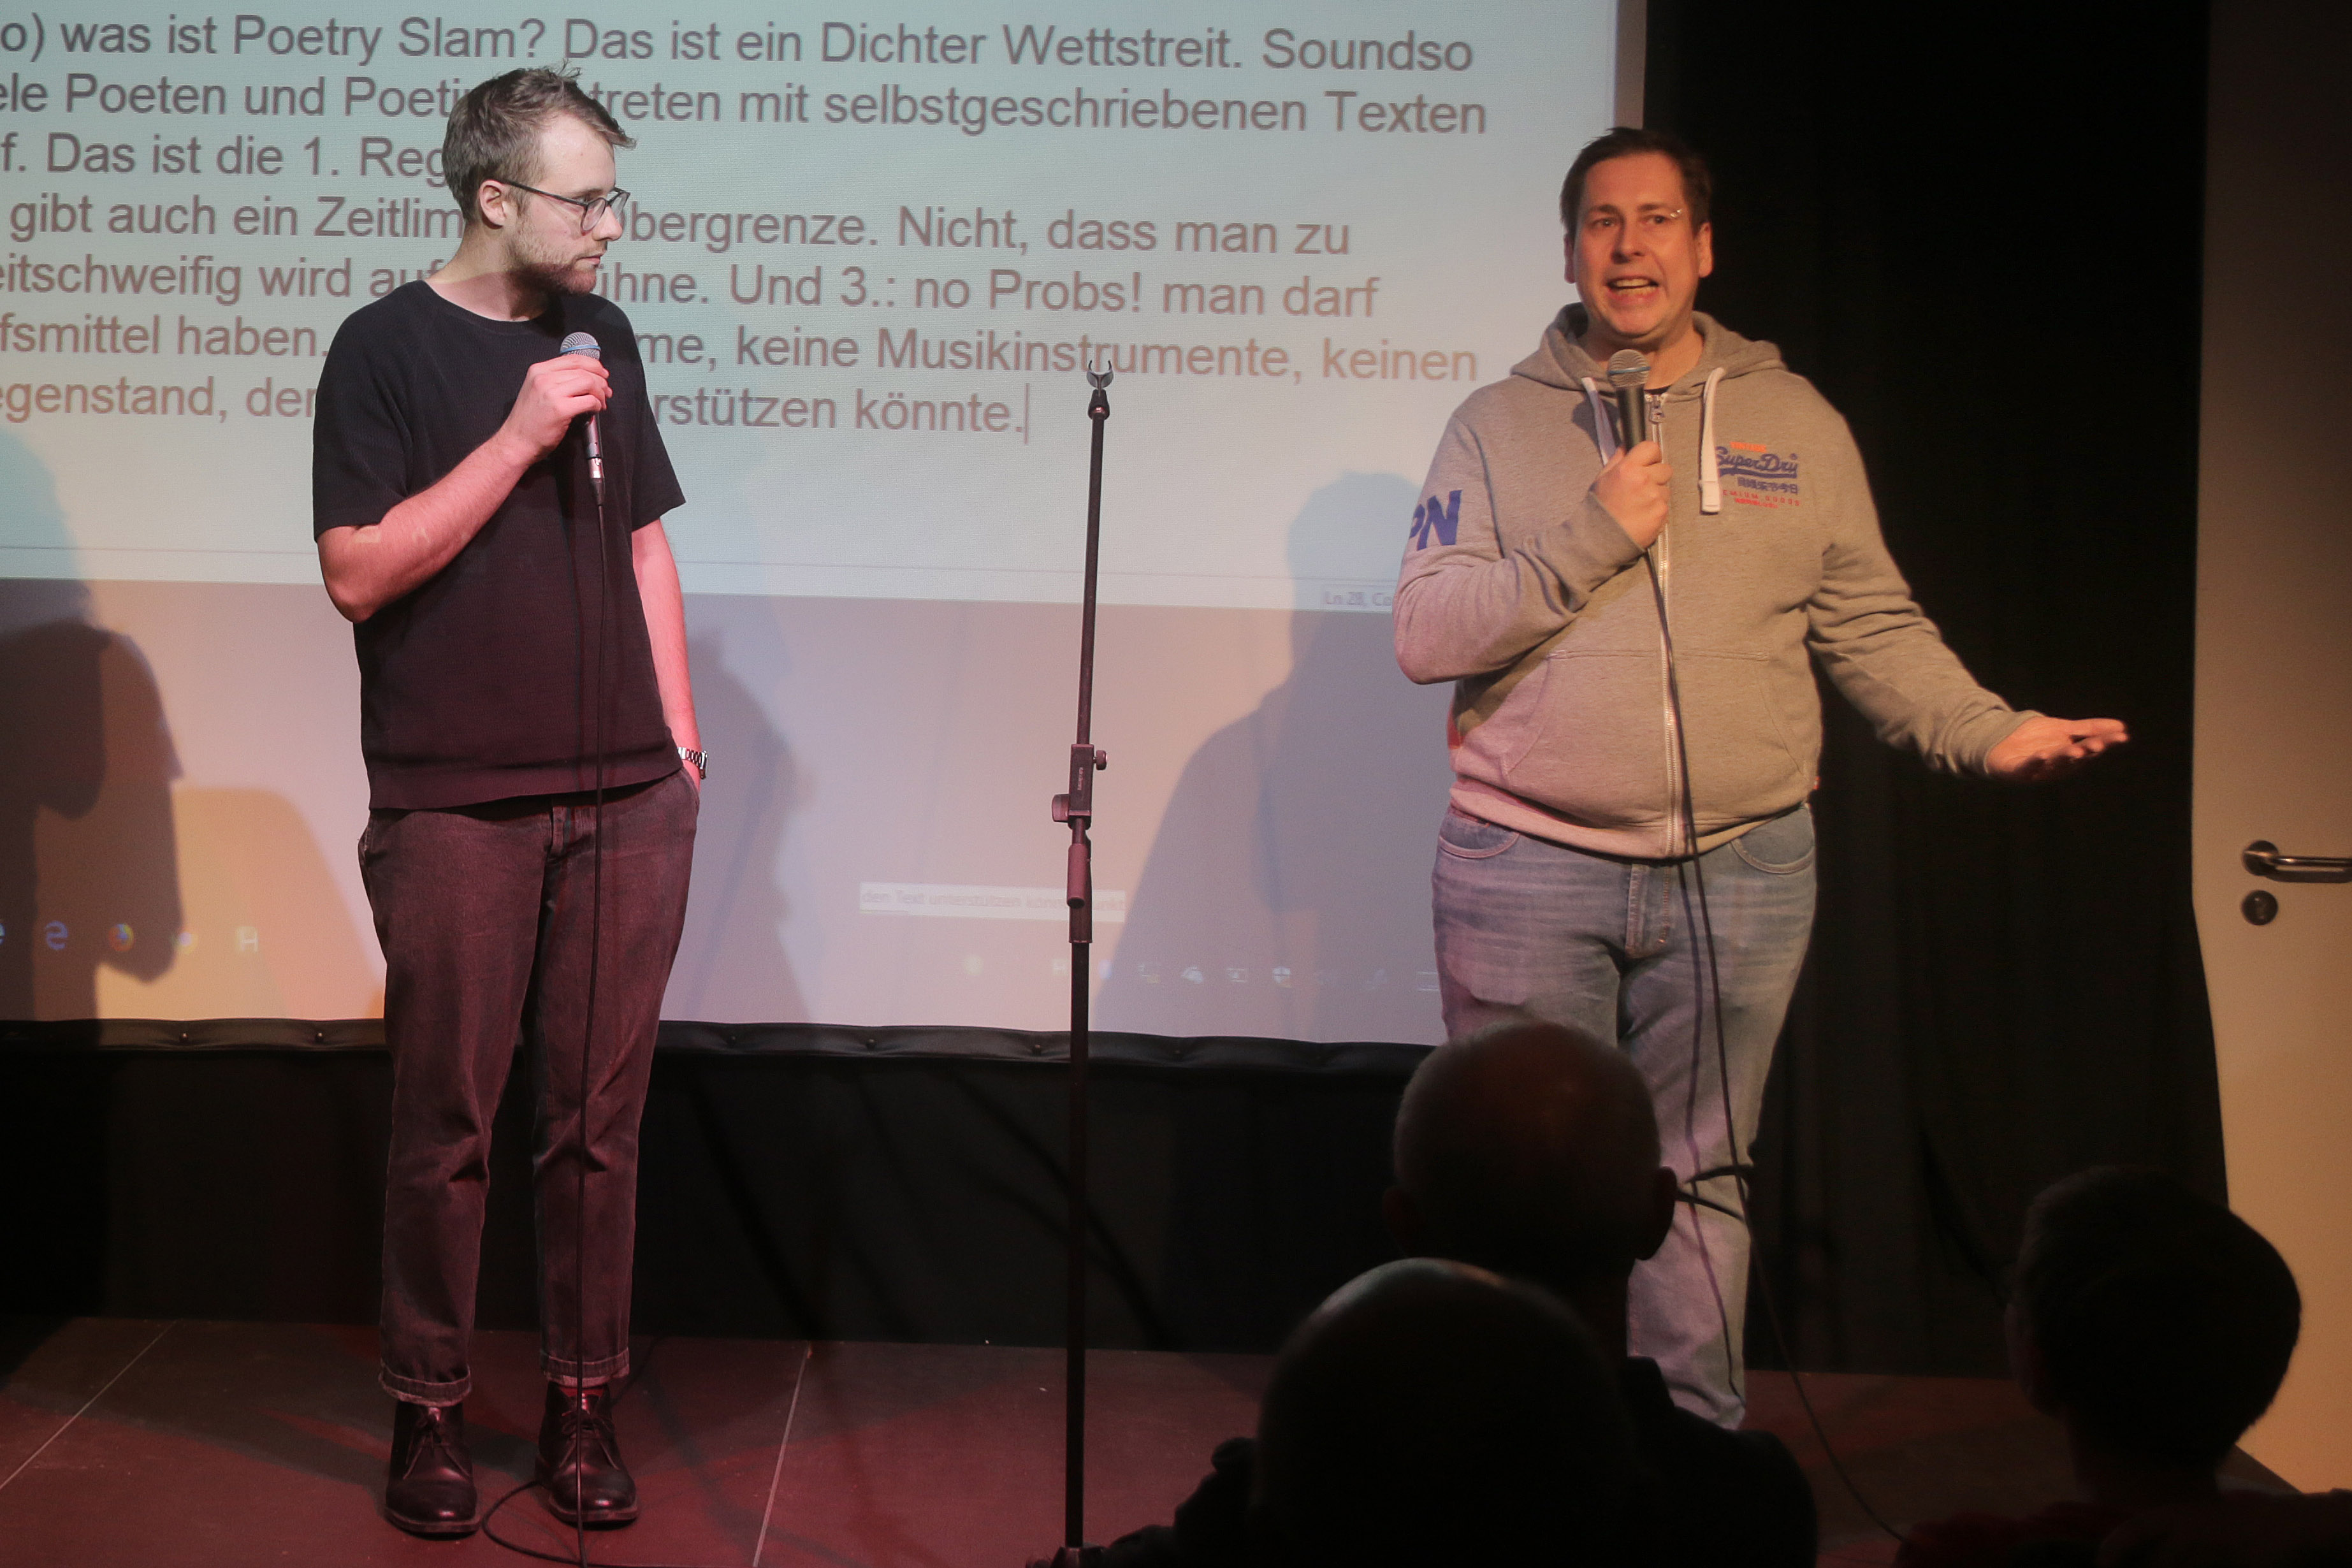 Die beiden Profi-Slammer Lars Ruppel (links) und Ko Bylanzky moderierten die Poetry Slam-Show. Foto: Markus Götzfried/ LHM